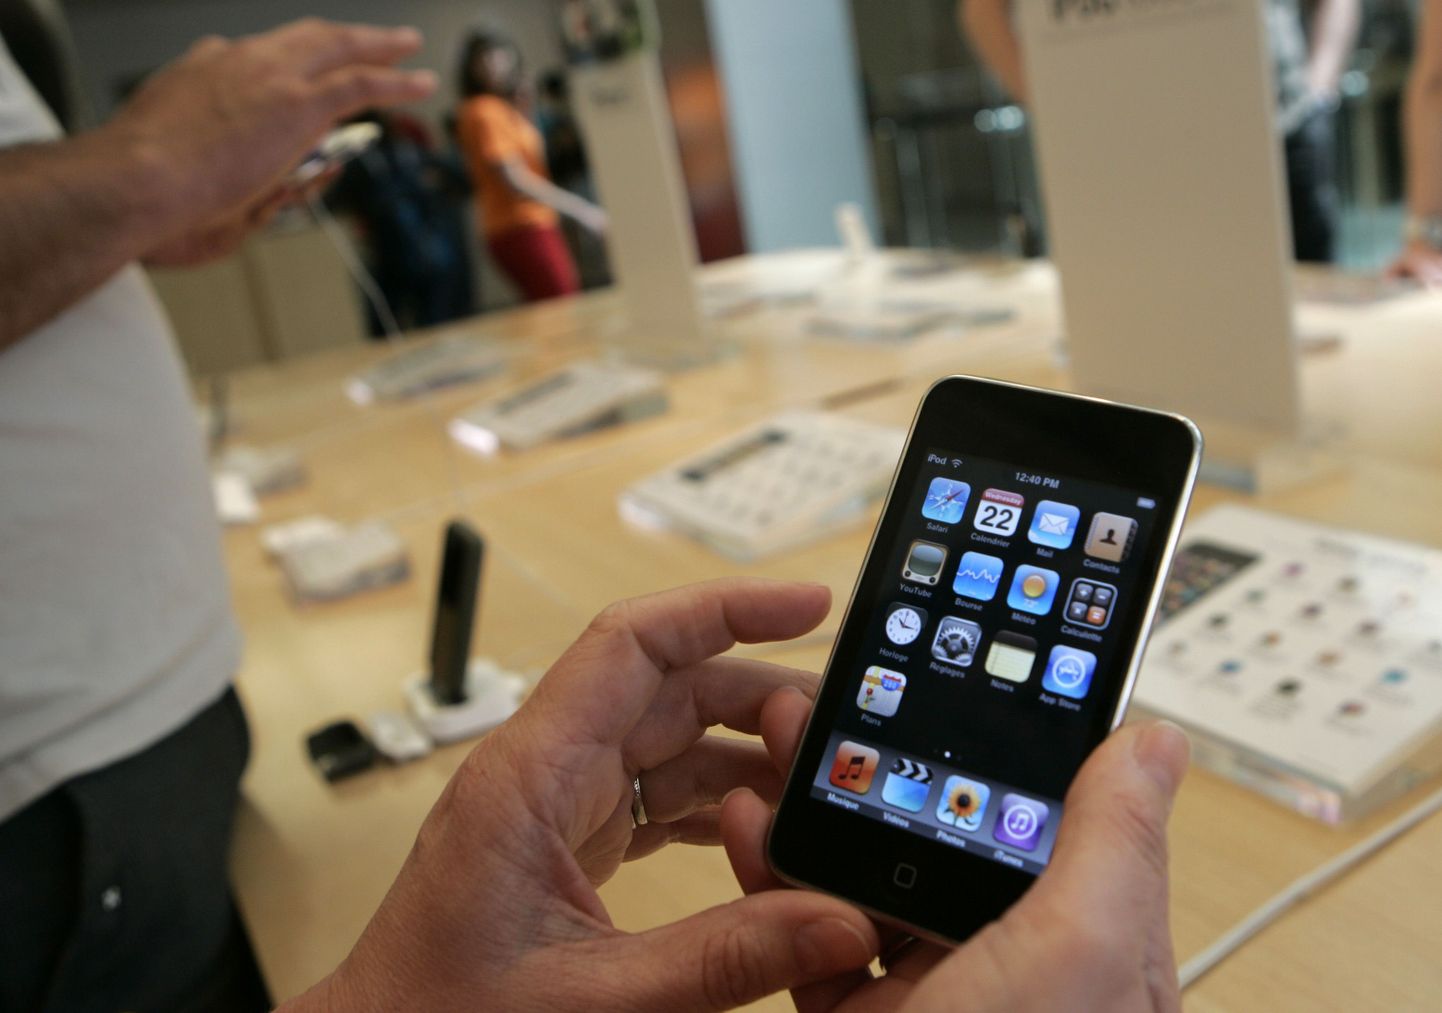 iPod on üks toodetest, mida kurjtagijad sel aastal suure tõenäosusega pettustes kasutavad.